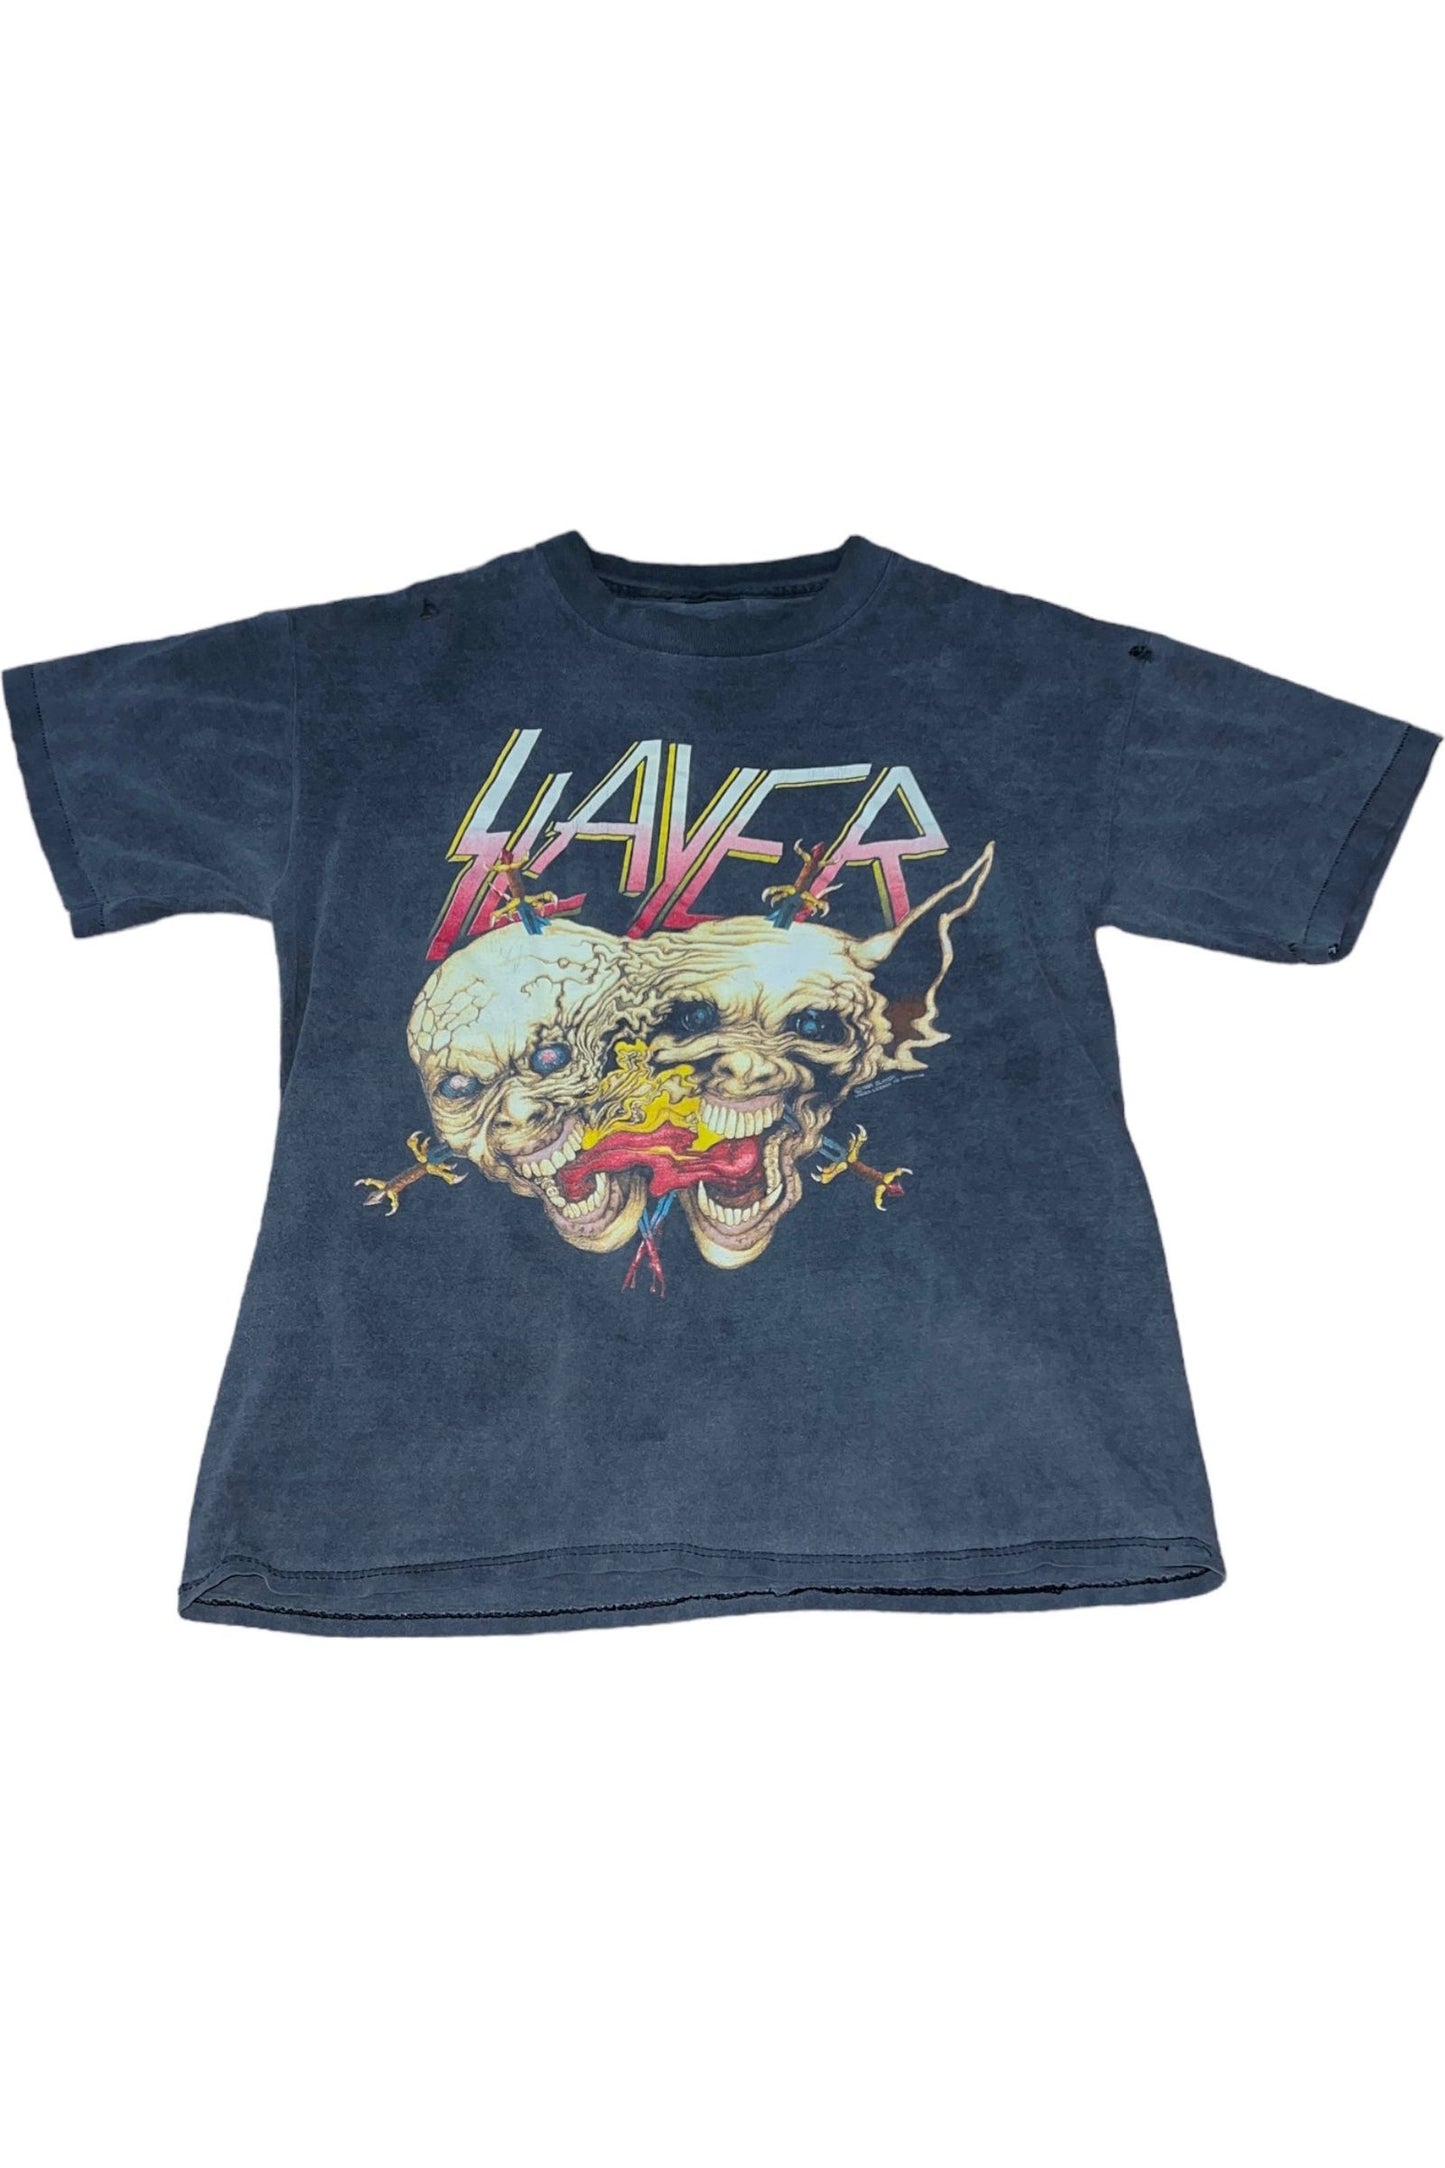 Slayer 1991 Tour - La Kultura